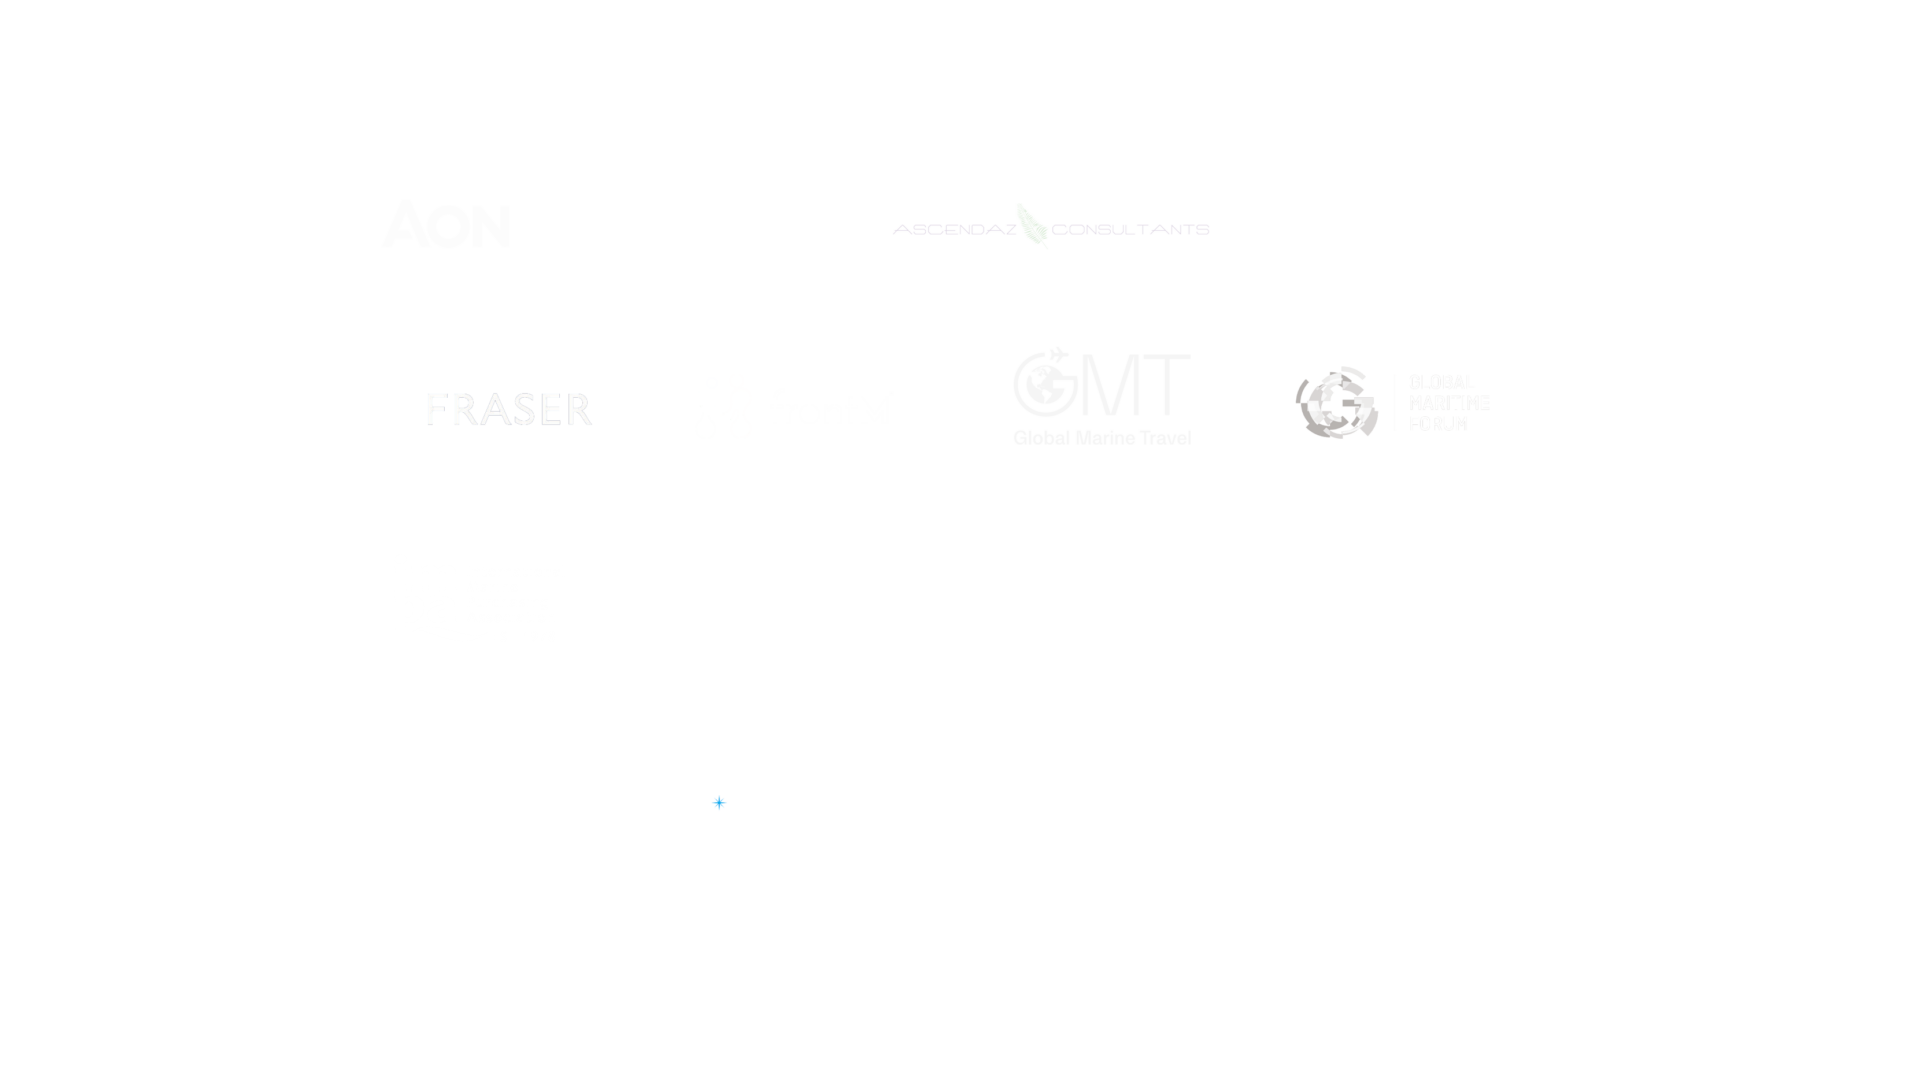 VIKAND Partner Logos